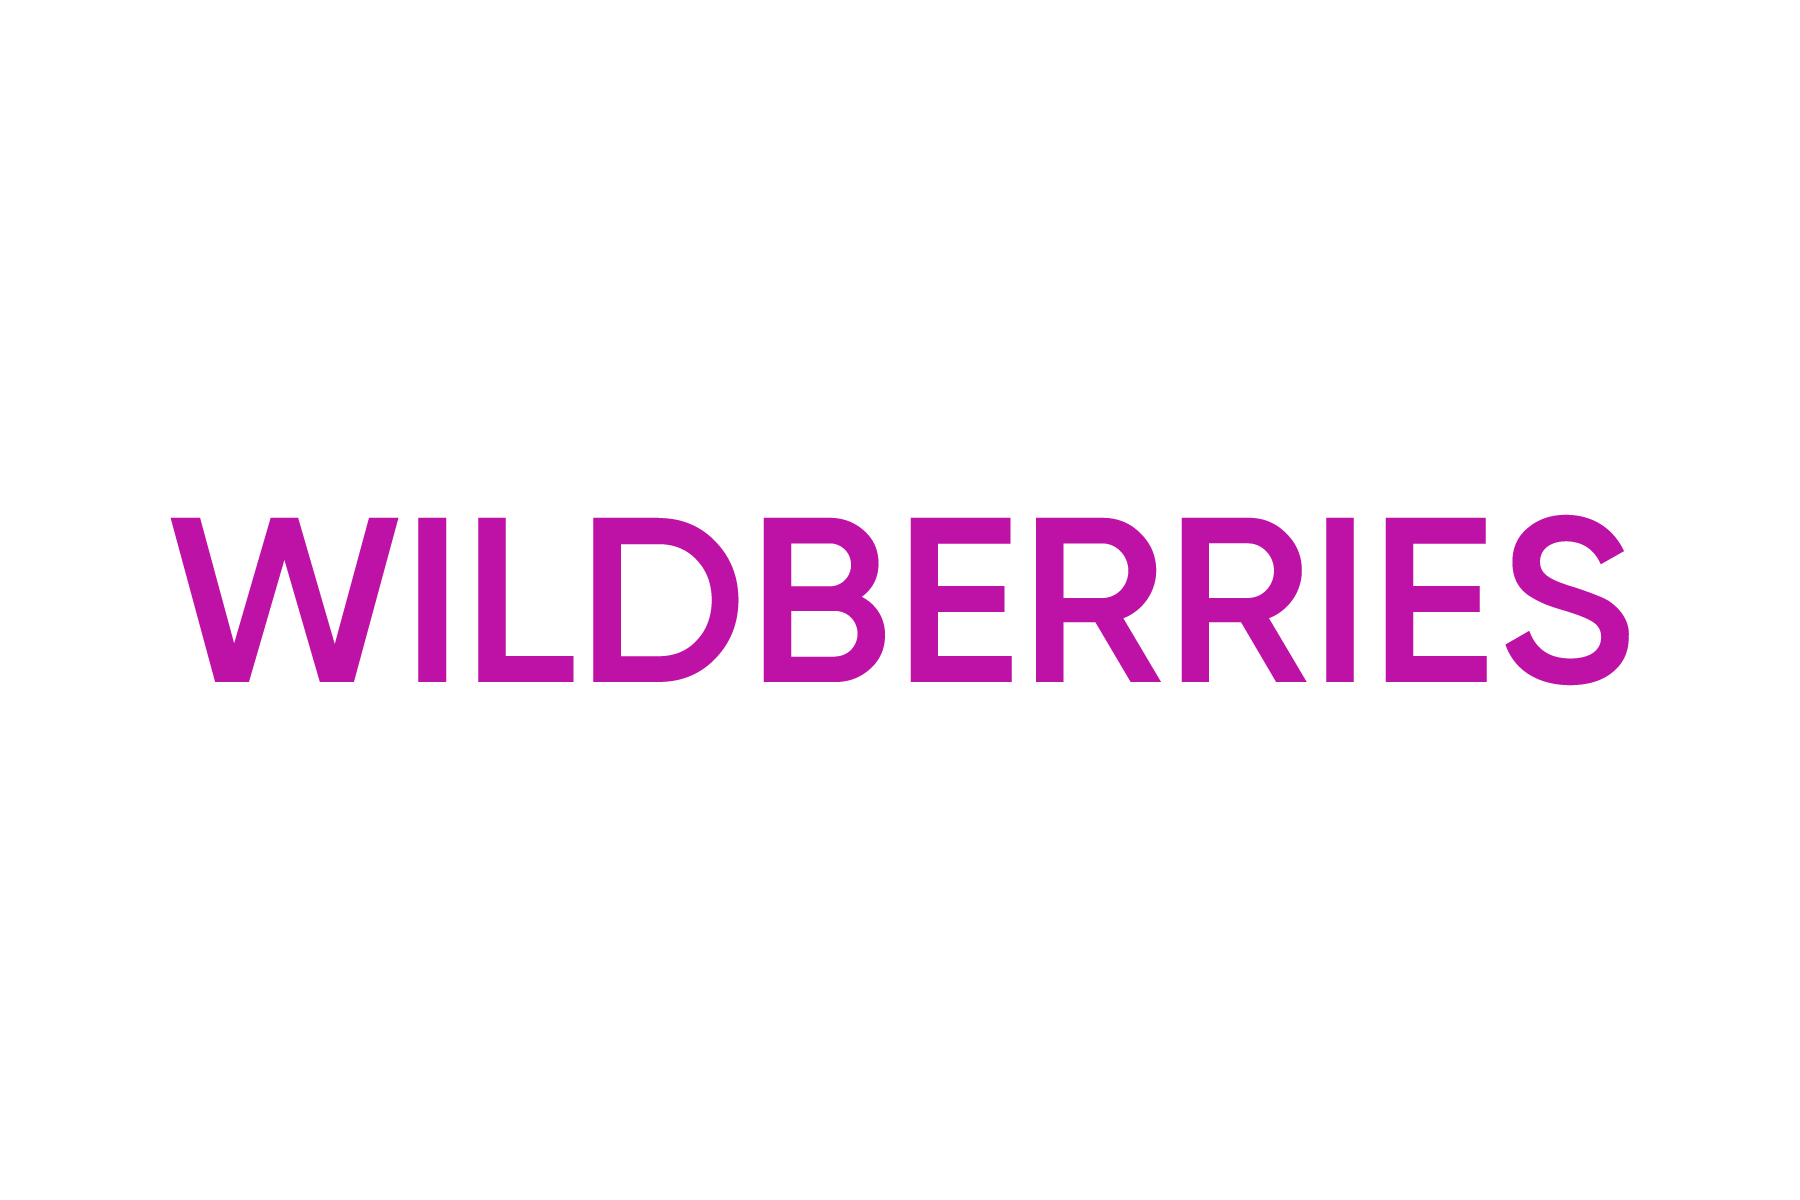 Вб тема. Wildberries. Wildberries лого. Надпись Wildberries. Логотип Wildberries на прозрачном фоне.